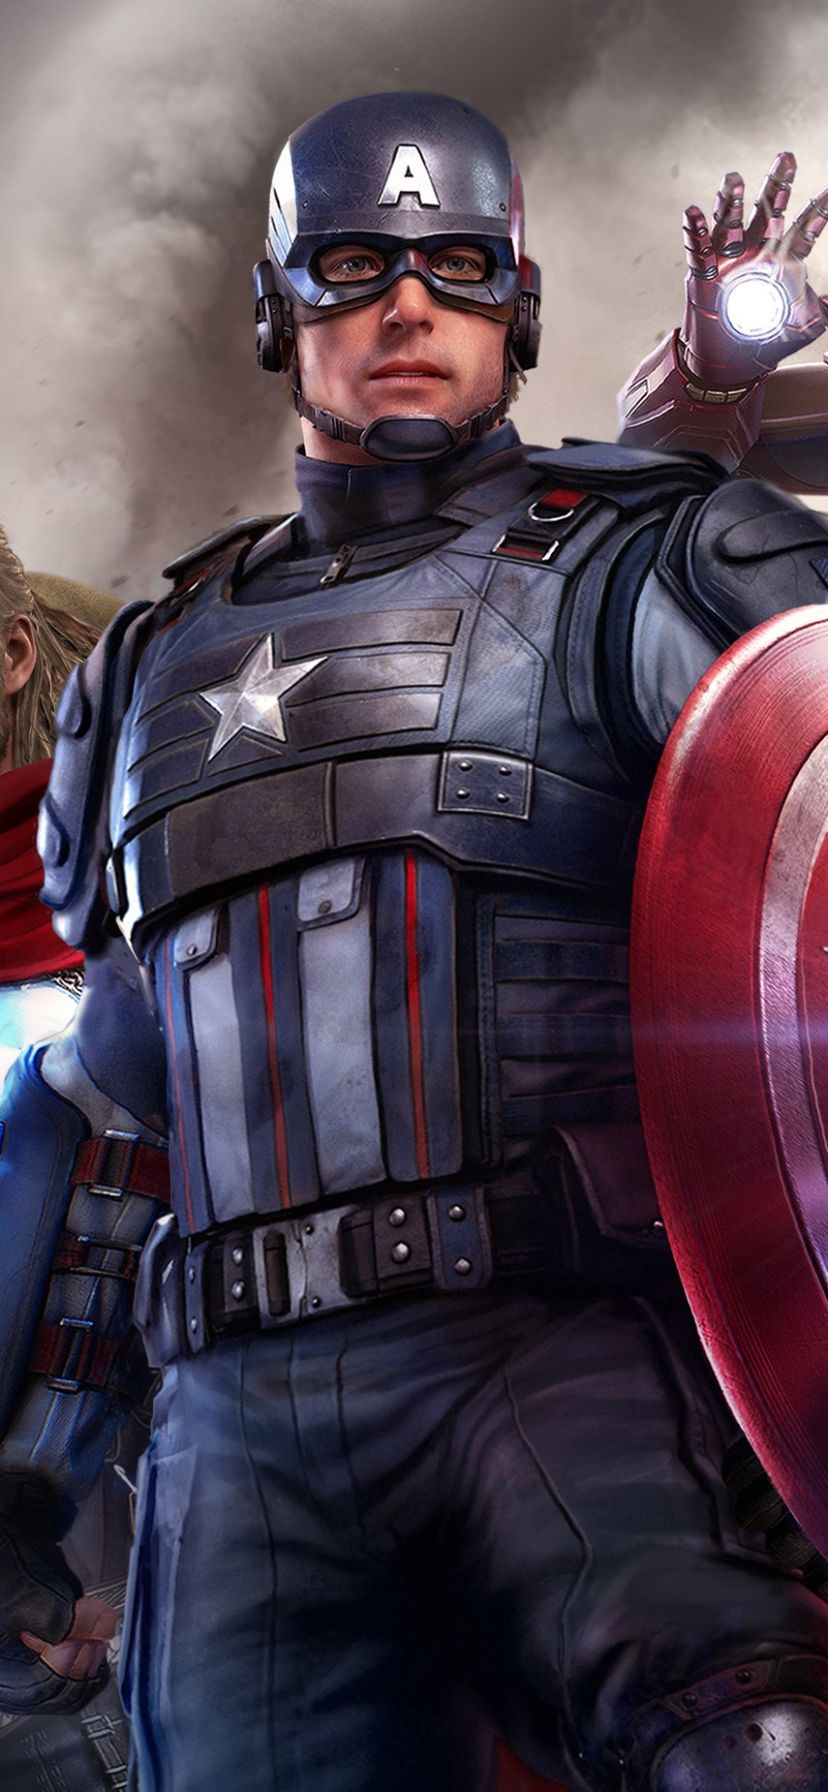 Descarga gratuita de fondo de pantalla para móvil de Los Vengadores, Videojuego, Capitan América, Marvel's Avengers, Capitan America.